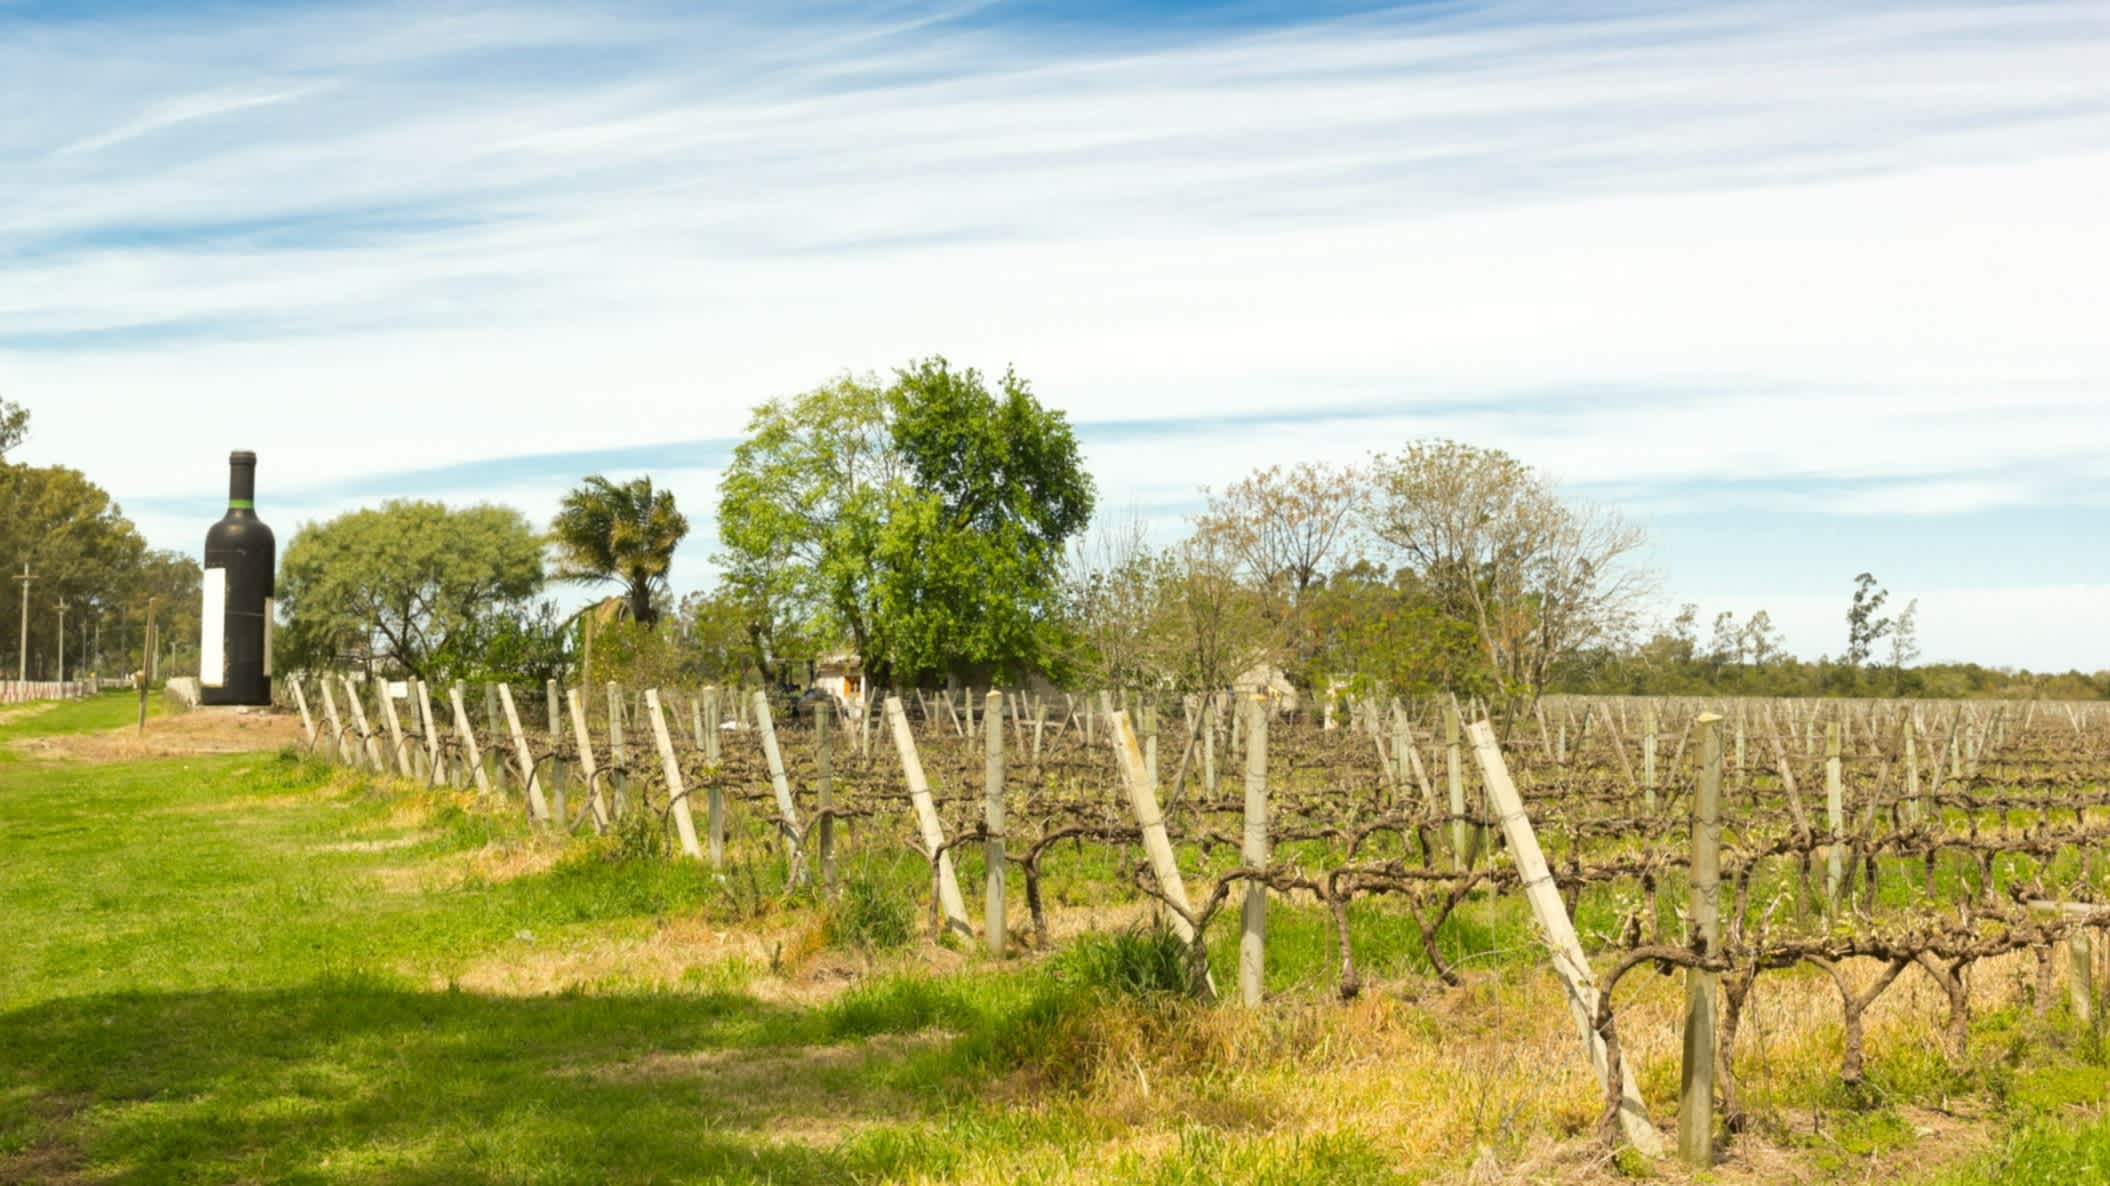 Domaine viticole uruguayen, près du Rio, en Uruguay

